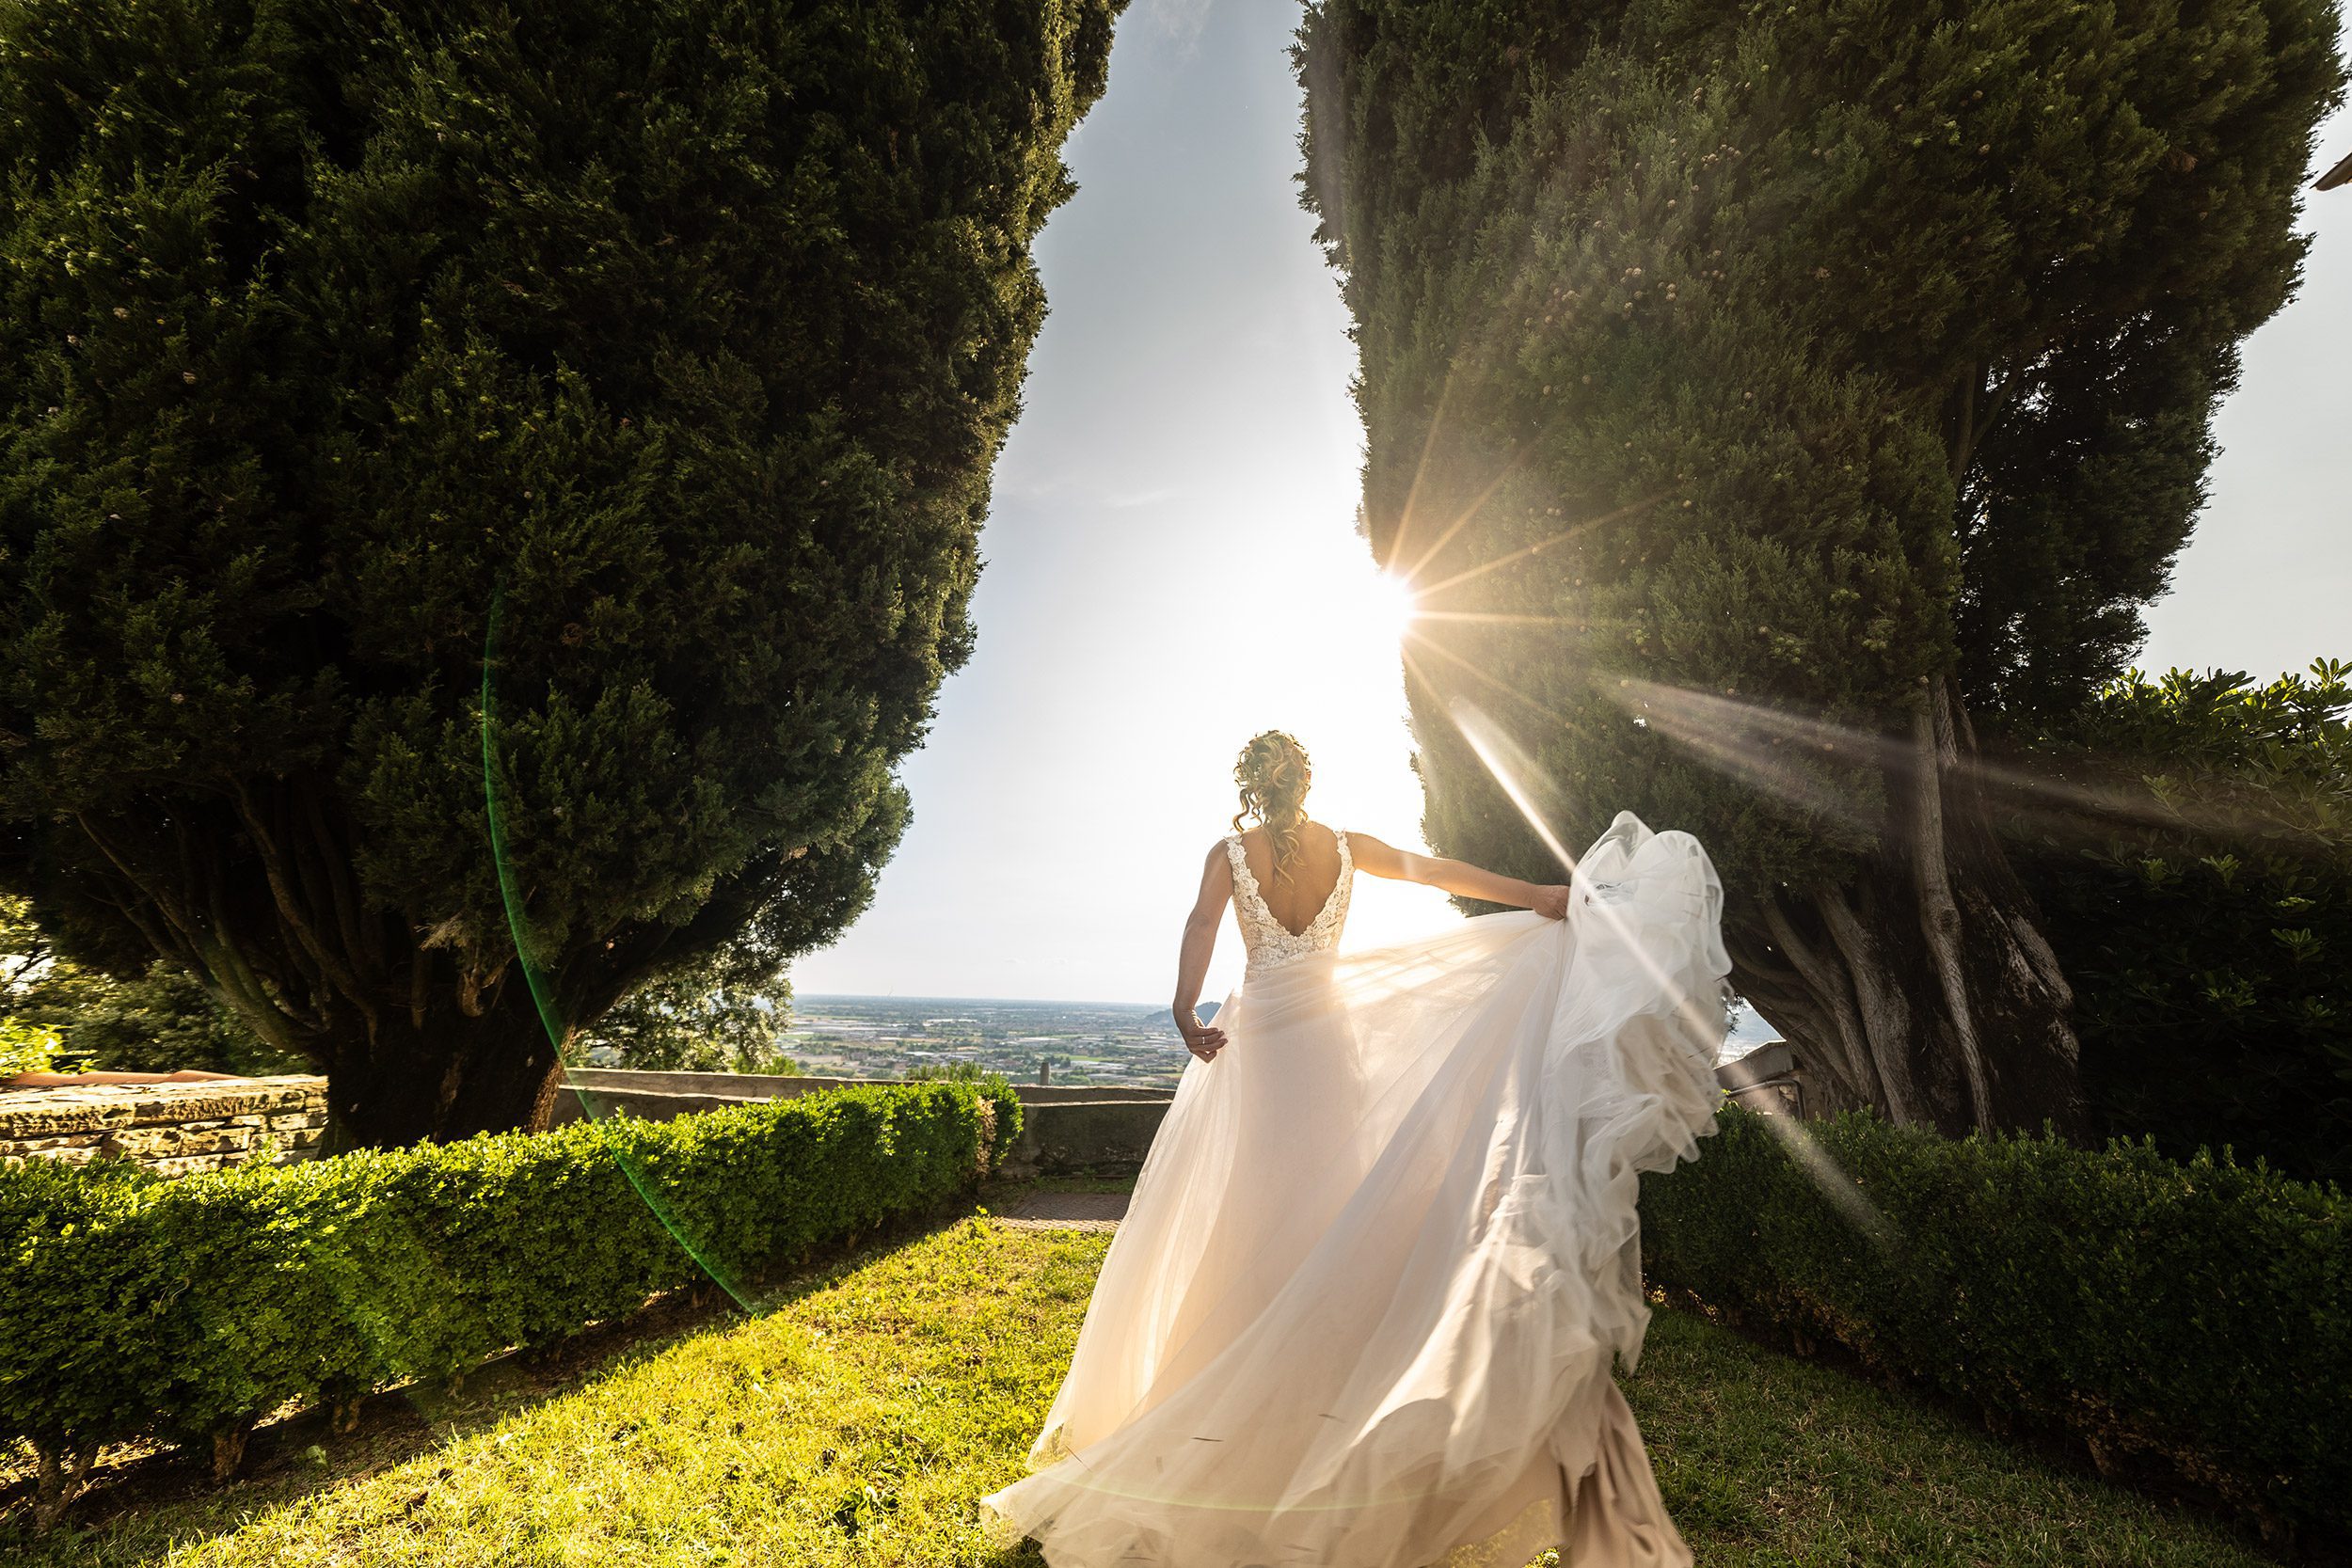 000 fotografo matrimonio reportage wedding ritratto shooting sposi castello degli angeli carobbio degli angeli bergamo copia 1